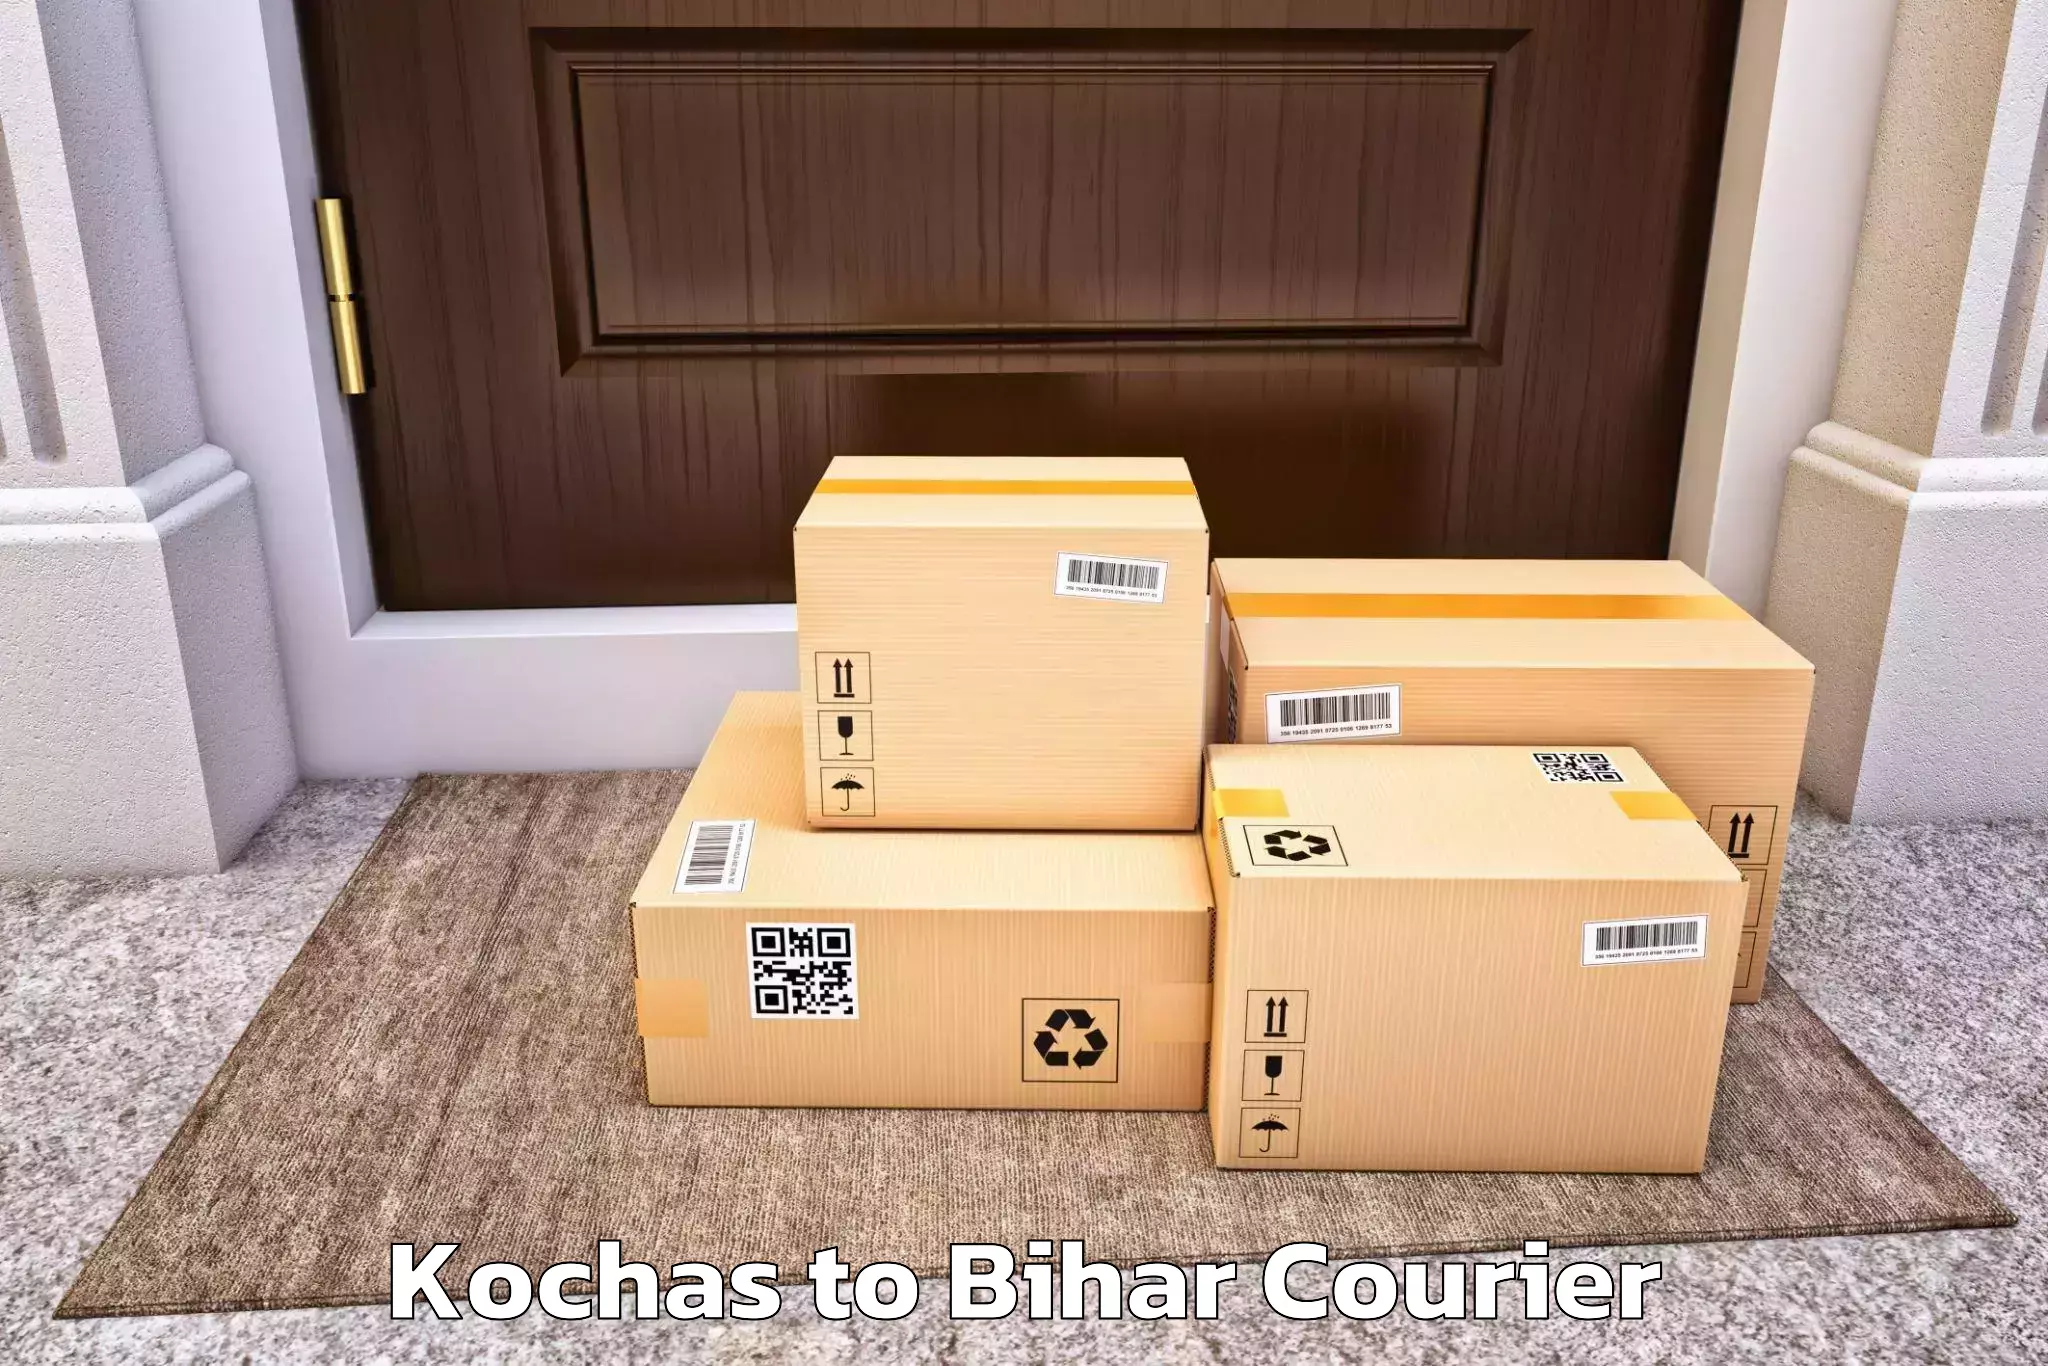 Furniture transport and storage Kochas to Jiwdhara